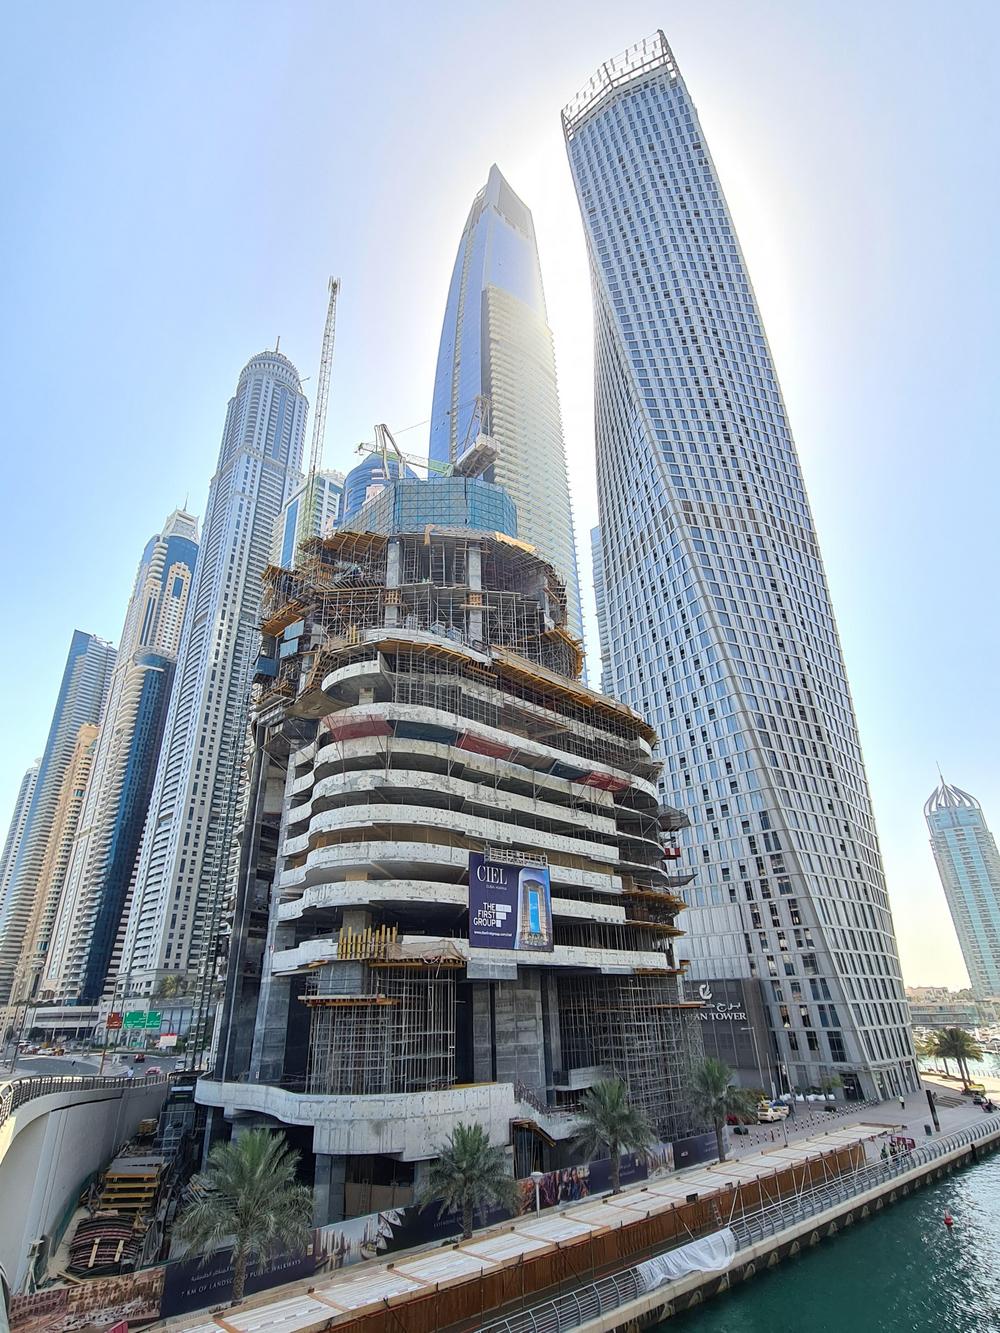 Ciel, cel mai înalt hotel din lume, în construcție